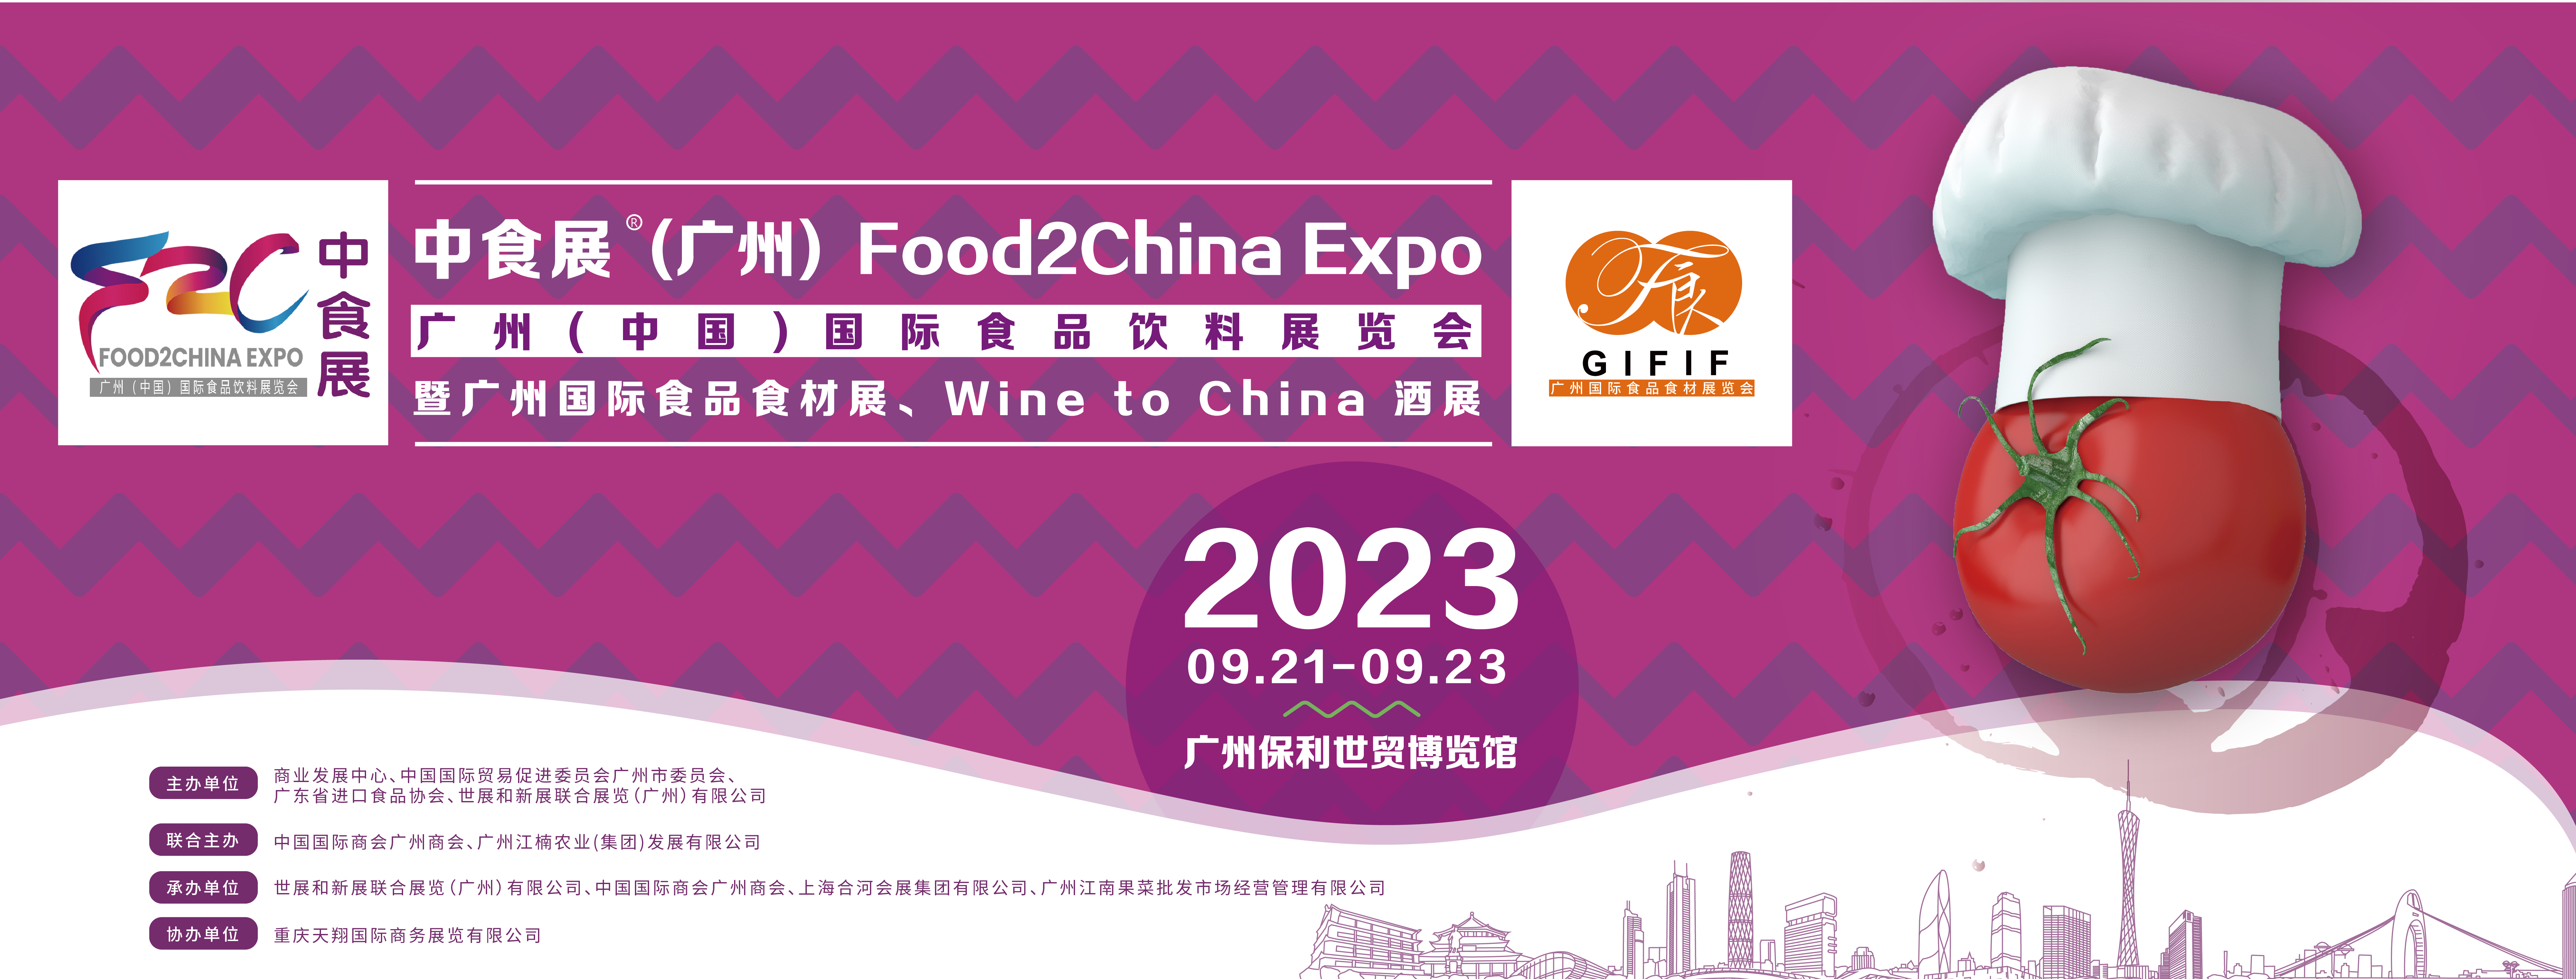 中食展（廣州）Food2China Expo暨廣州國際食品食材展啟航